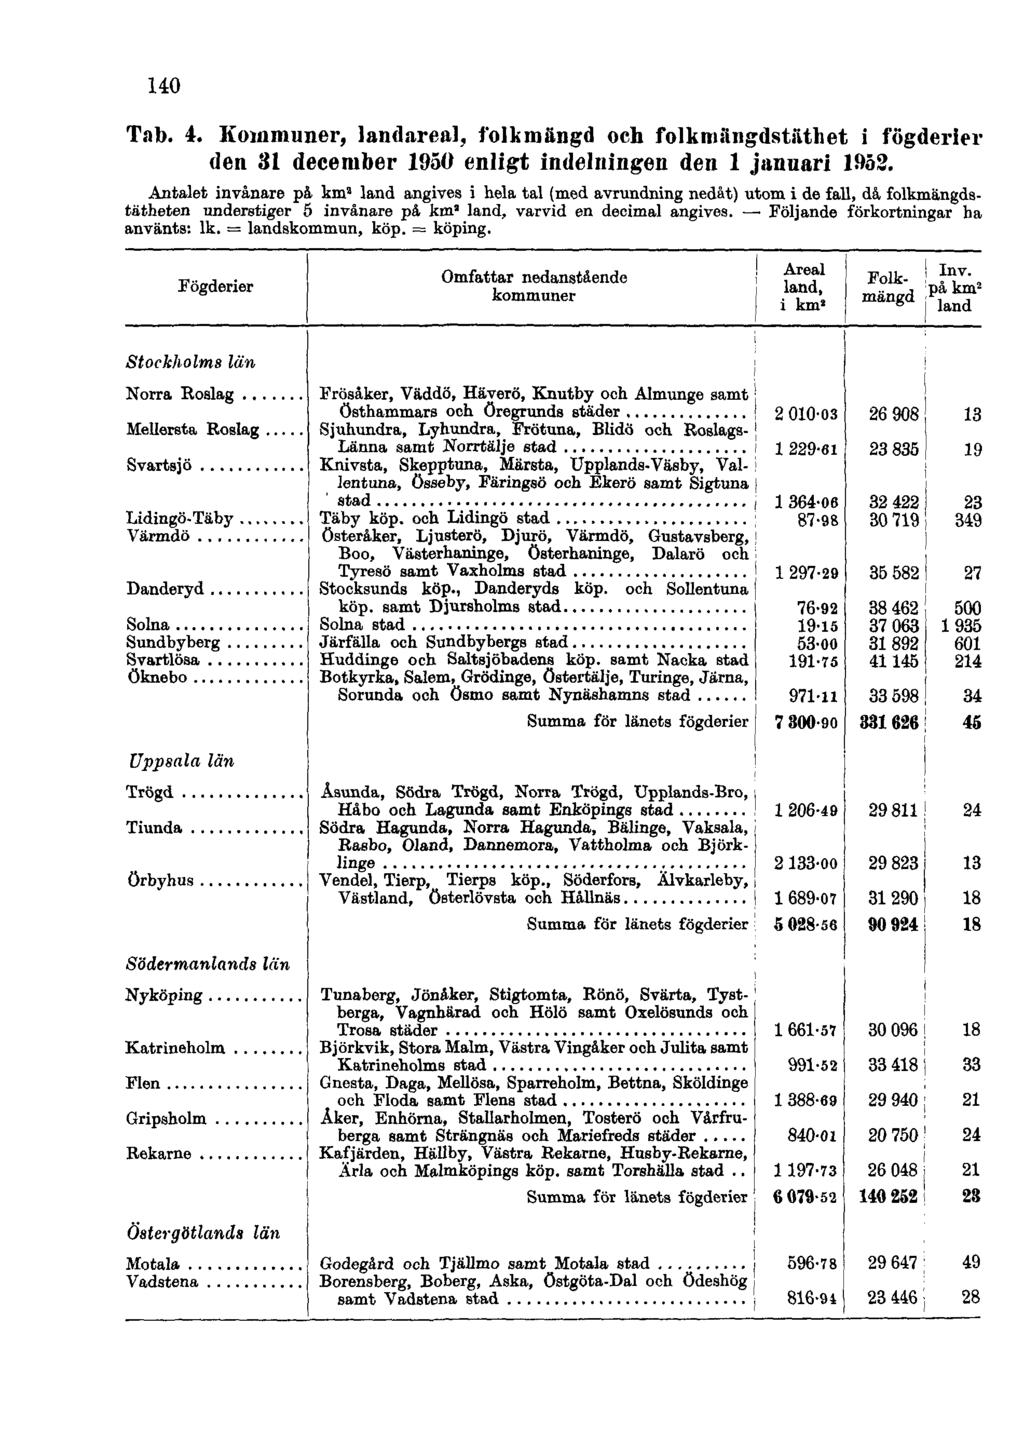 140 Tab. 4. Kommuner, landareal, folkmängd och folkmängdstäthet i fögderier den 31 december 1950 enligt indelningen den 1 januari 1952.